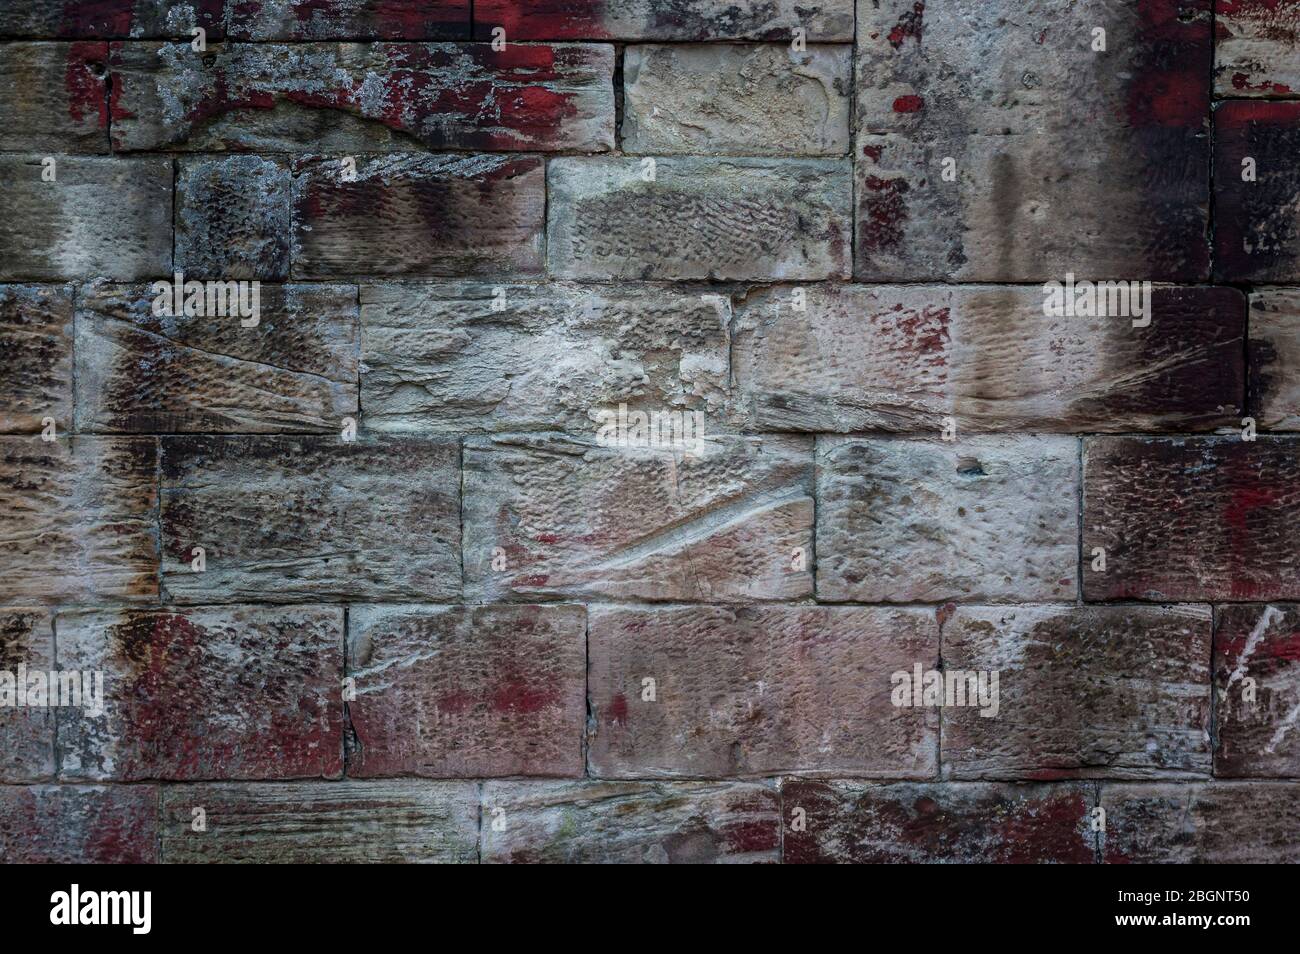 Primo piano di un vecchio muro di arenaria stagionato di pietre di diverse dimensioni e struttura con efflorescenza e macchie di colore rosso, bianco e nero Foto Stock